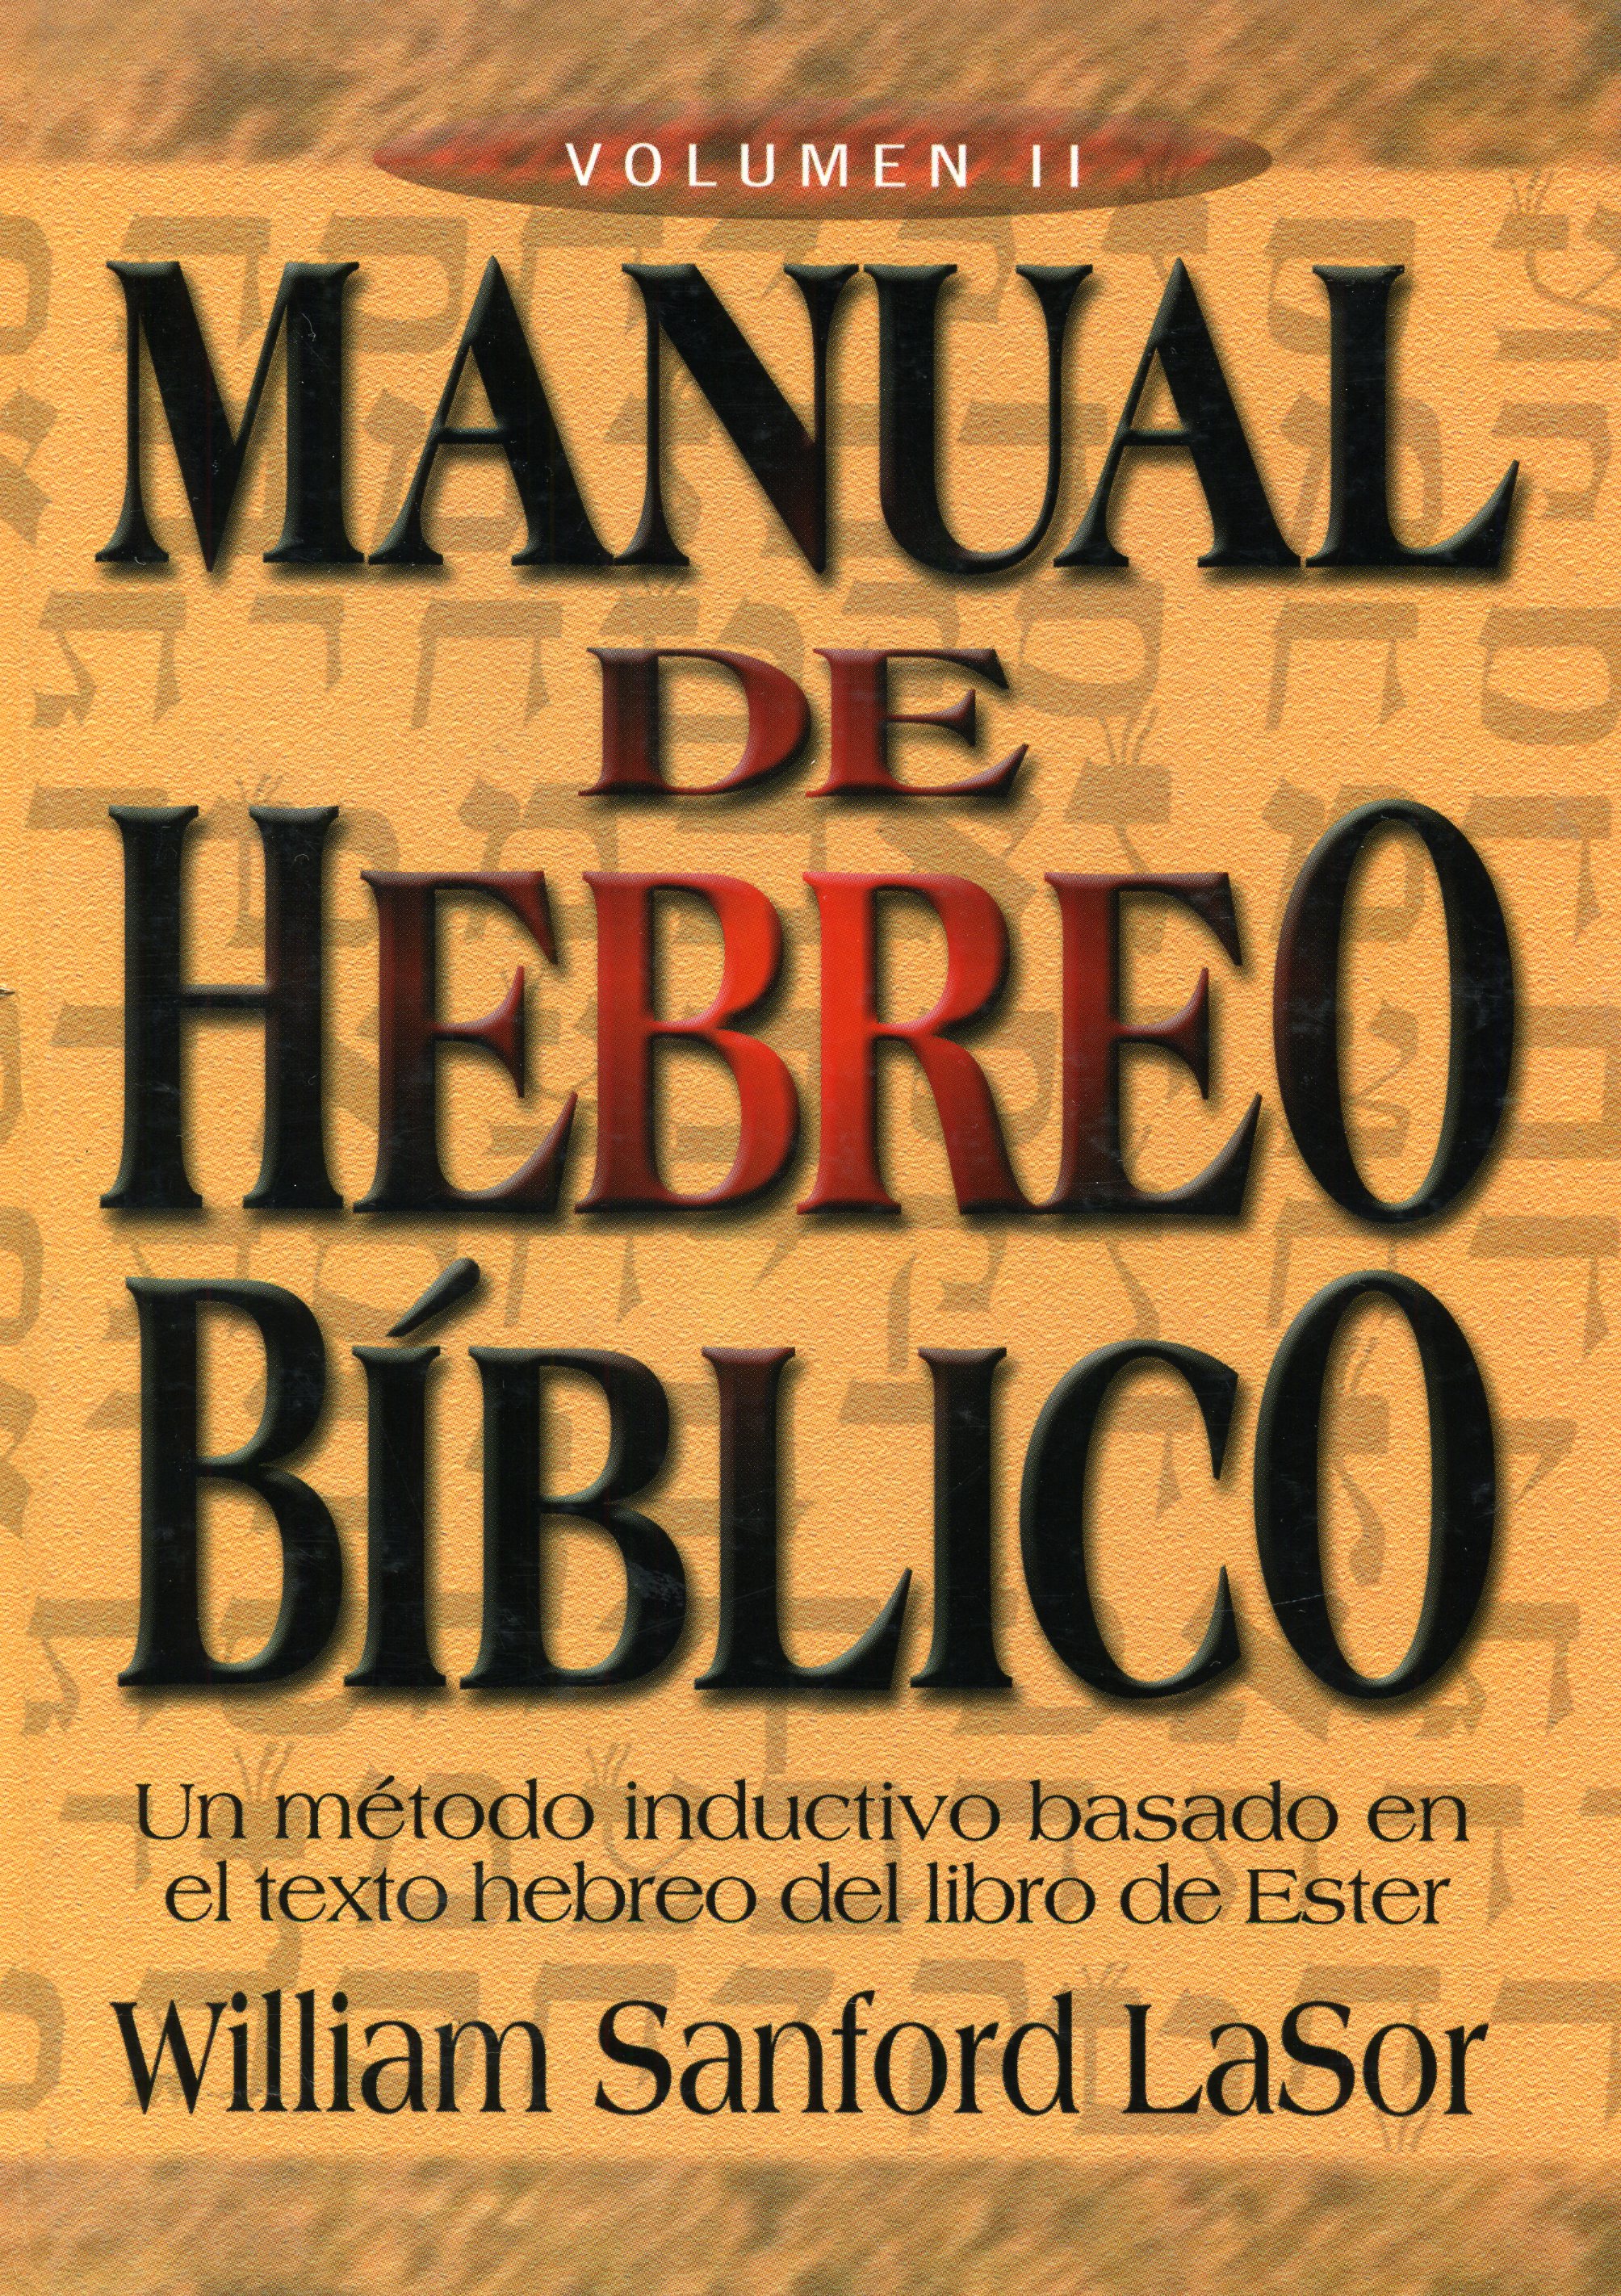 Manual de hebreo bíblico - Volumen II